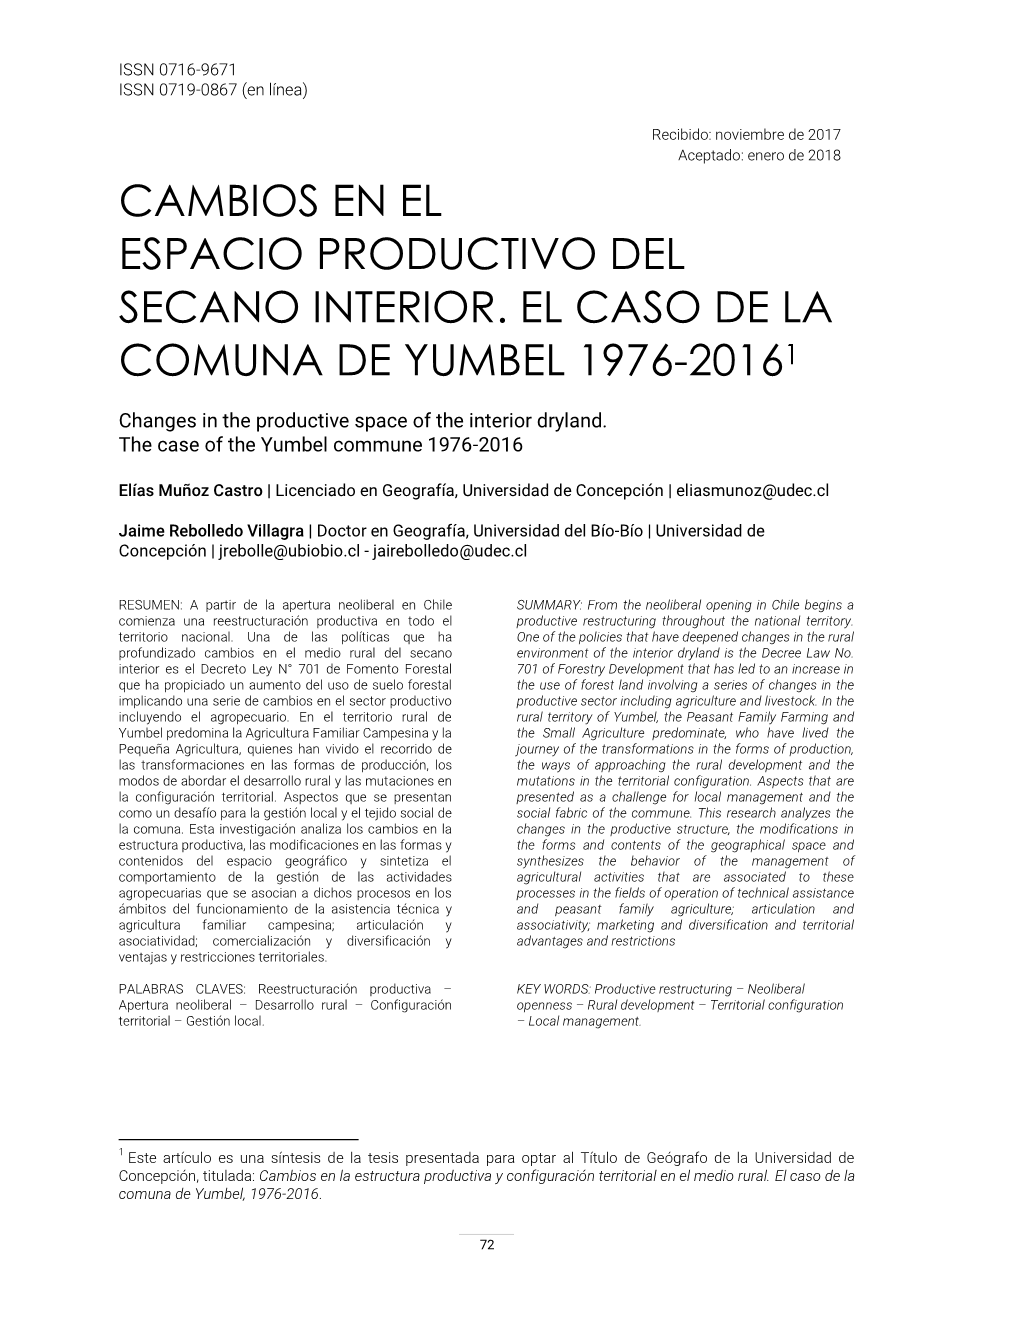 Cambios En El Espacio Productivo Del Secano Interior. El Caso De La Comuna De Yumbel 1976-20161